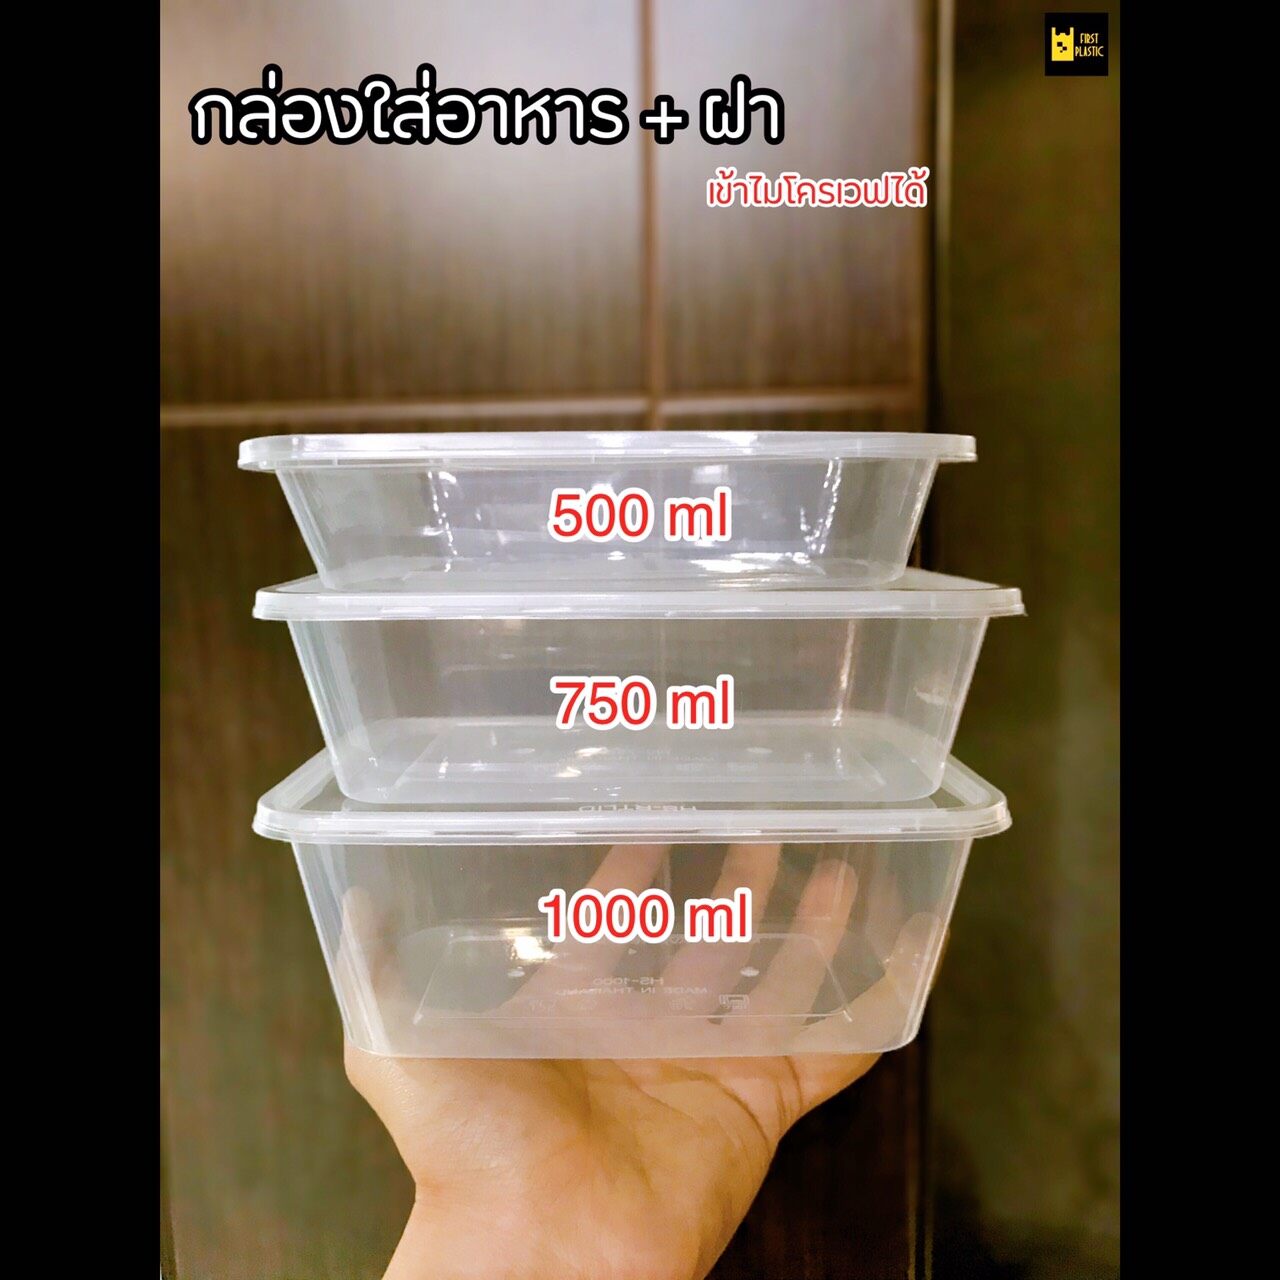 ✨กล่องใส่อาหารพลาสติก กล่องพลาสติกใส่อาหาร เข้าไมโครเวฟได้ 1 ช่อง พร้อมฝา แพค 25 ชิ้น พลาสติก PP เกรด A 500ml / 750ml / 1,000ml ราคาถูก